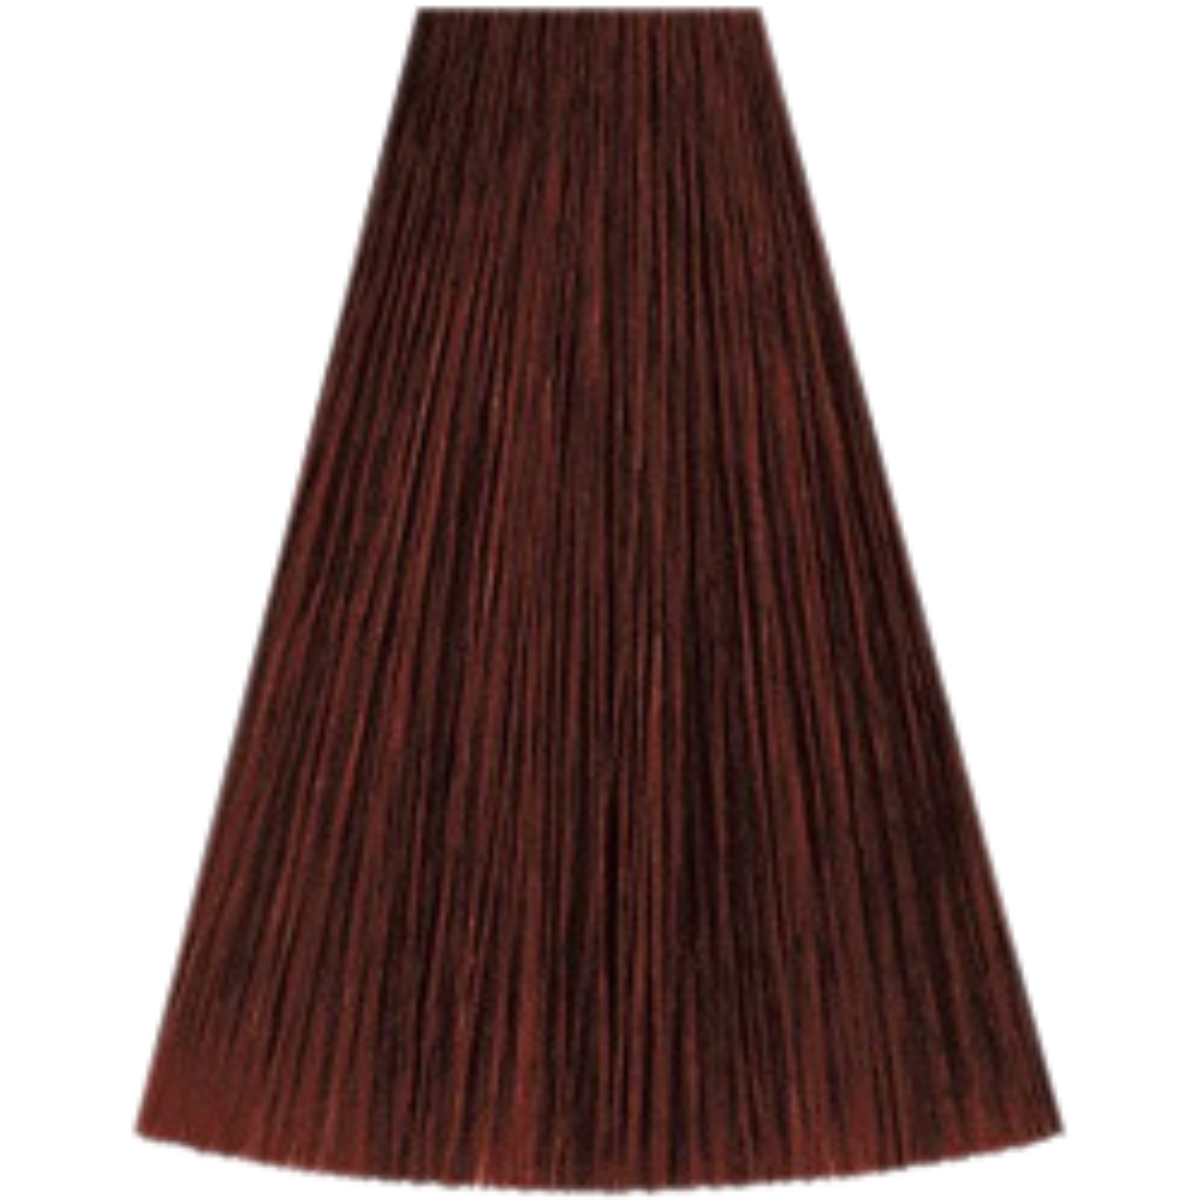 צבע שיער 5/57 LIGHT BROWN MAHOGANY BRUNETTE קאדוס KADUS צבע לשיער 60 DRO